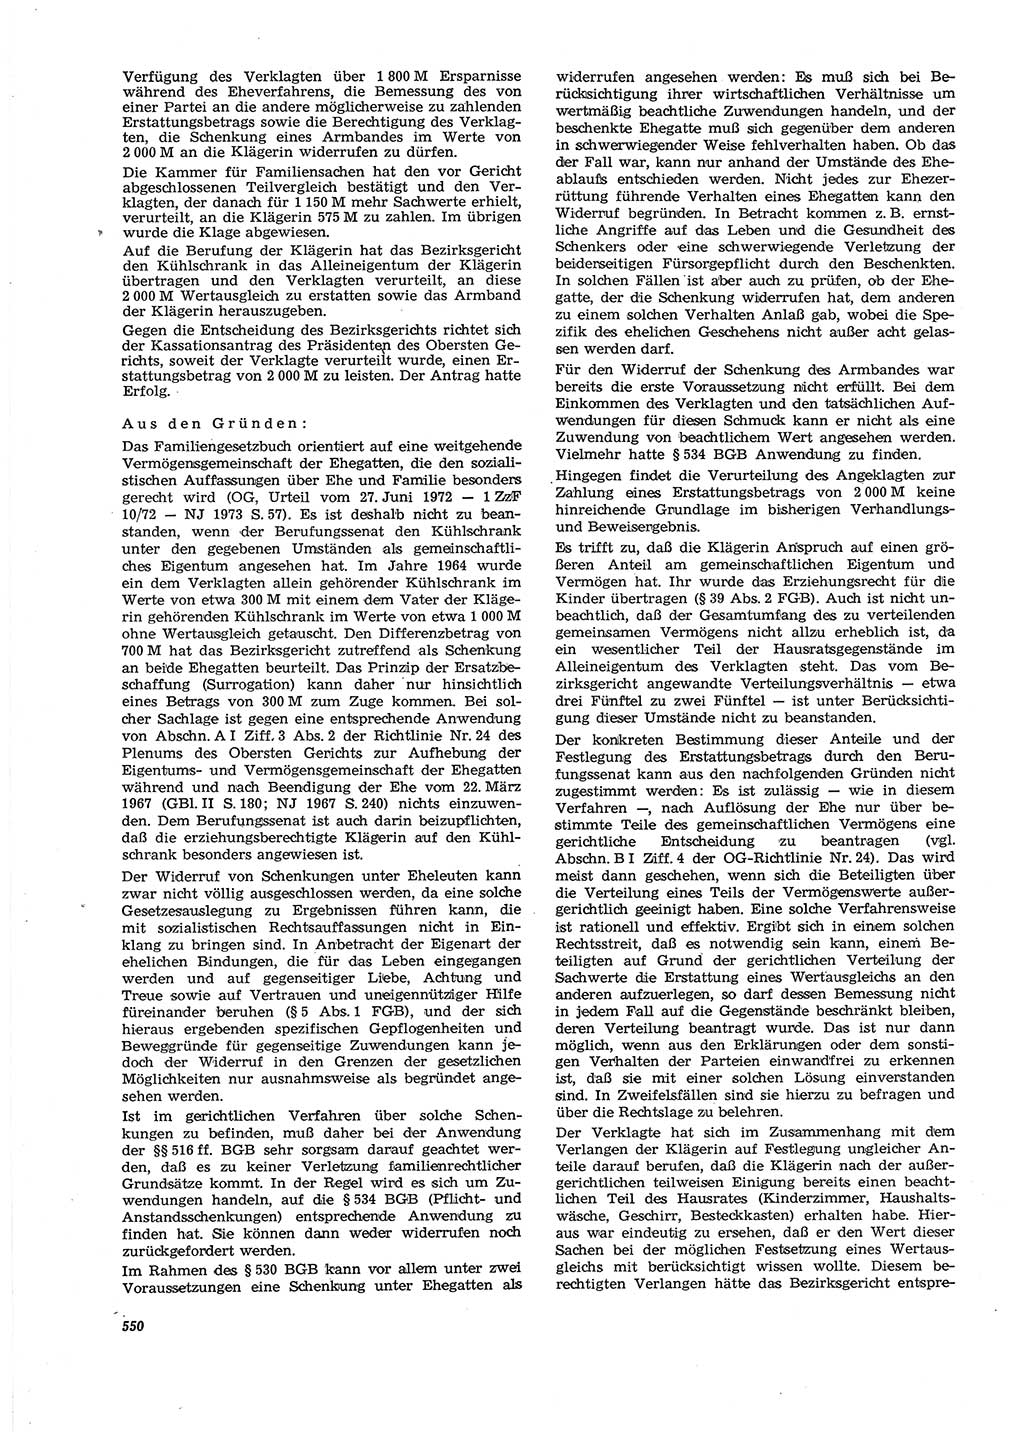 Neue Justiz (NJ), Zeitschrift für Recht und Rechtswissenschaft [Deutsche Demokratische Republik (DDR)], 27. Jahrgang 1973, Seite 550 (NJ DDR 1973, S. 550)